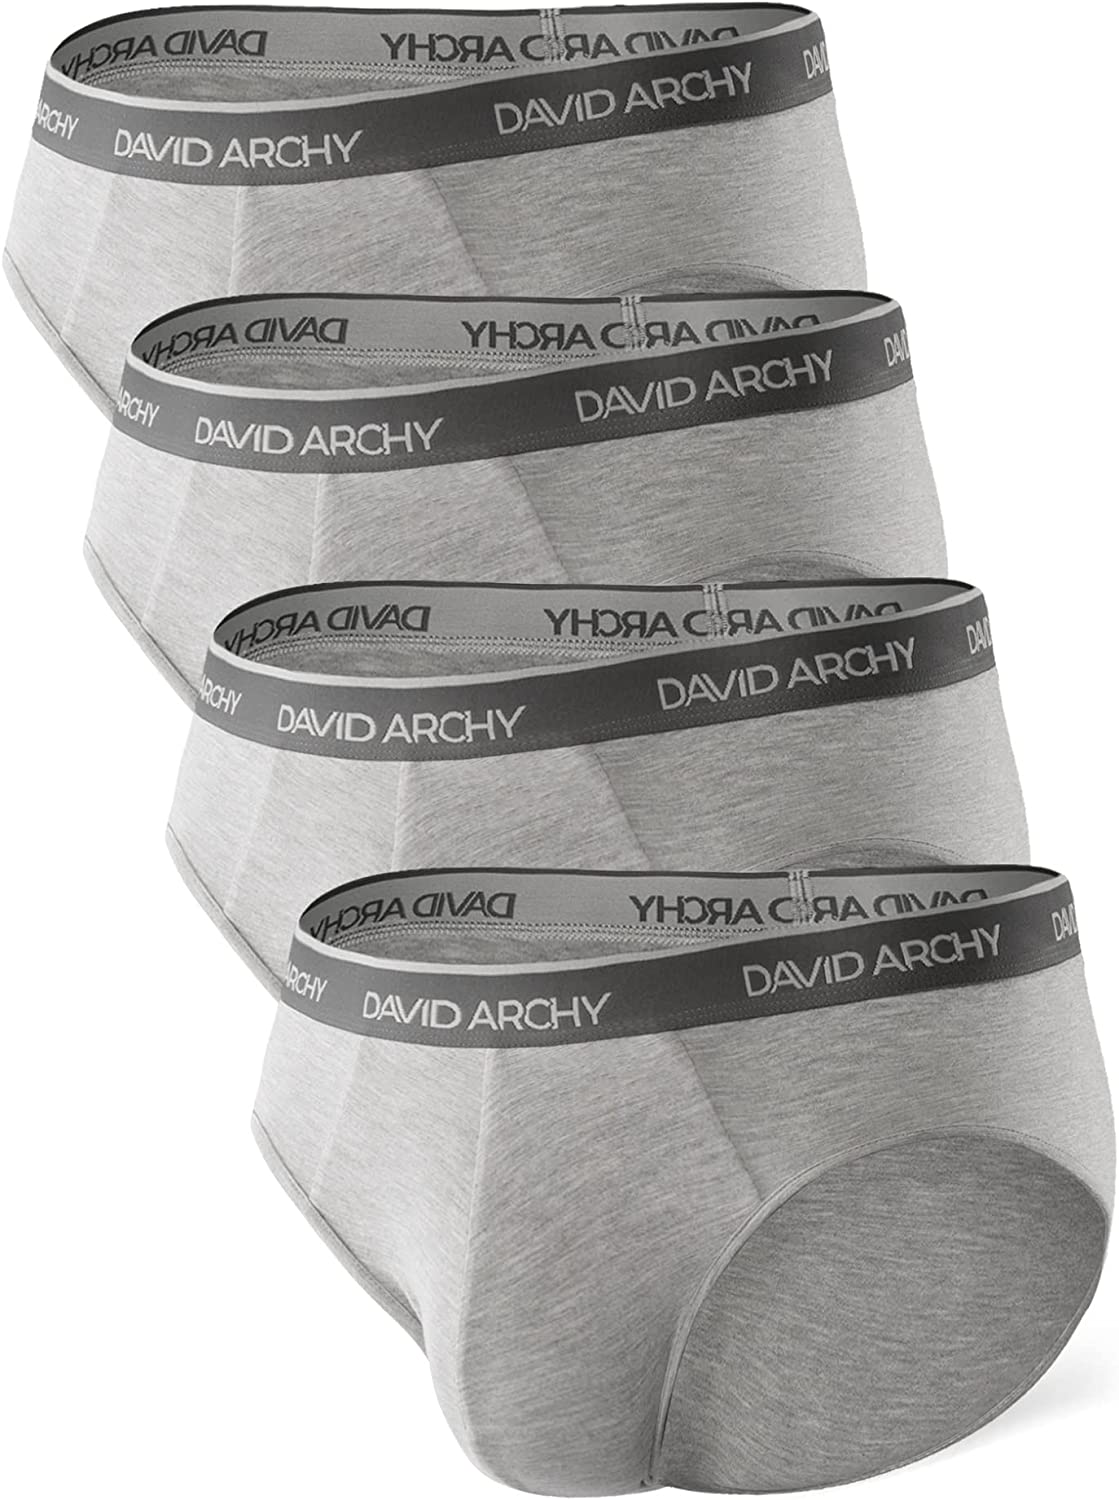 DAVID ARCHY Men's Underwear Bamboo Rayon Briefs Palestine